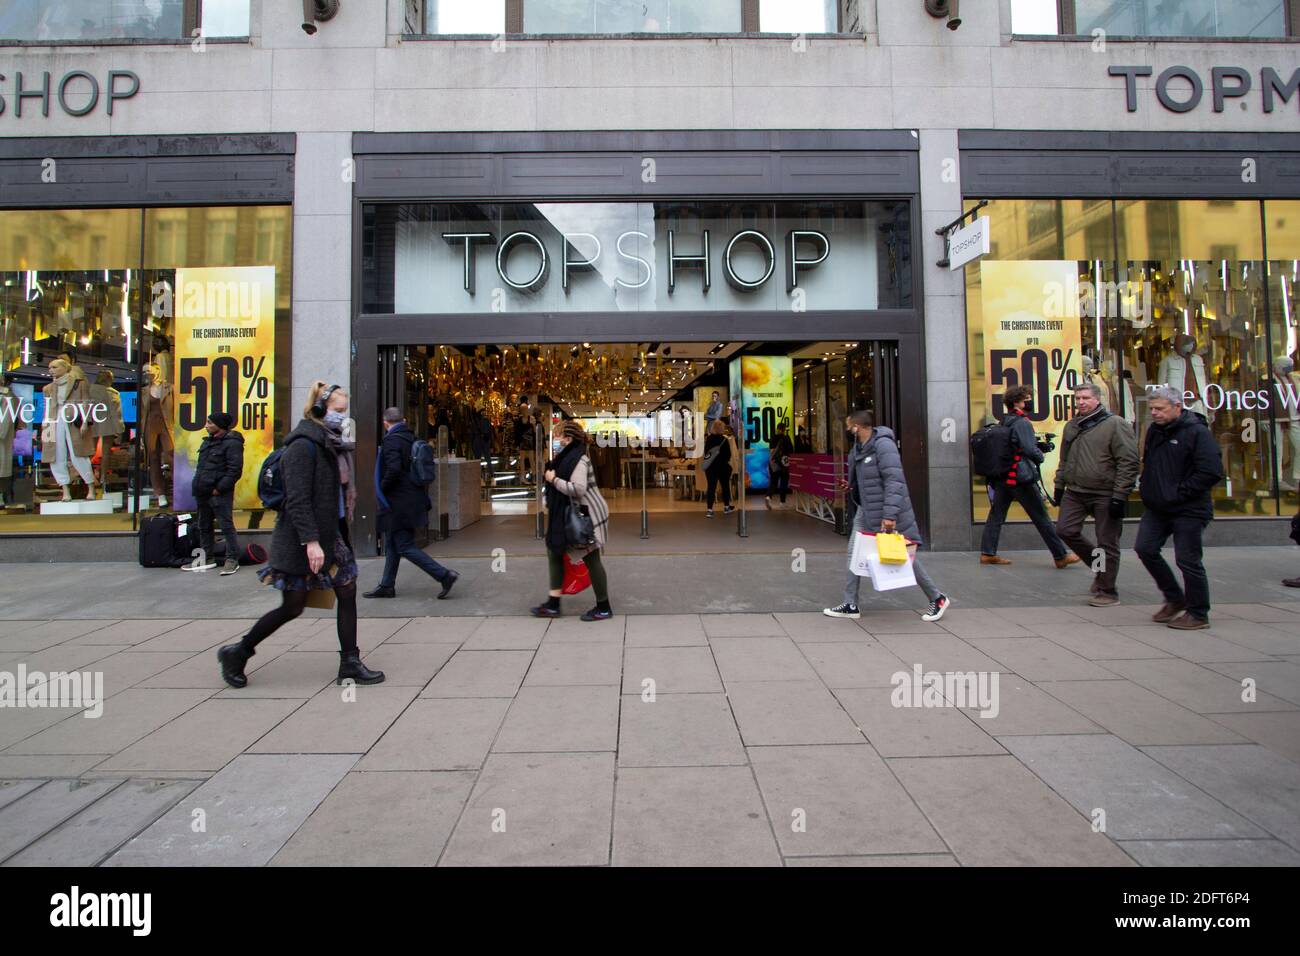 topshop, retail fashion outlet Oxford Street London Stock Photo